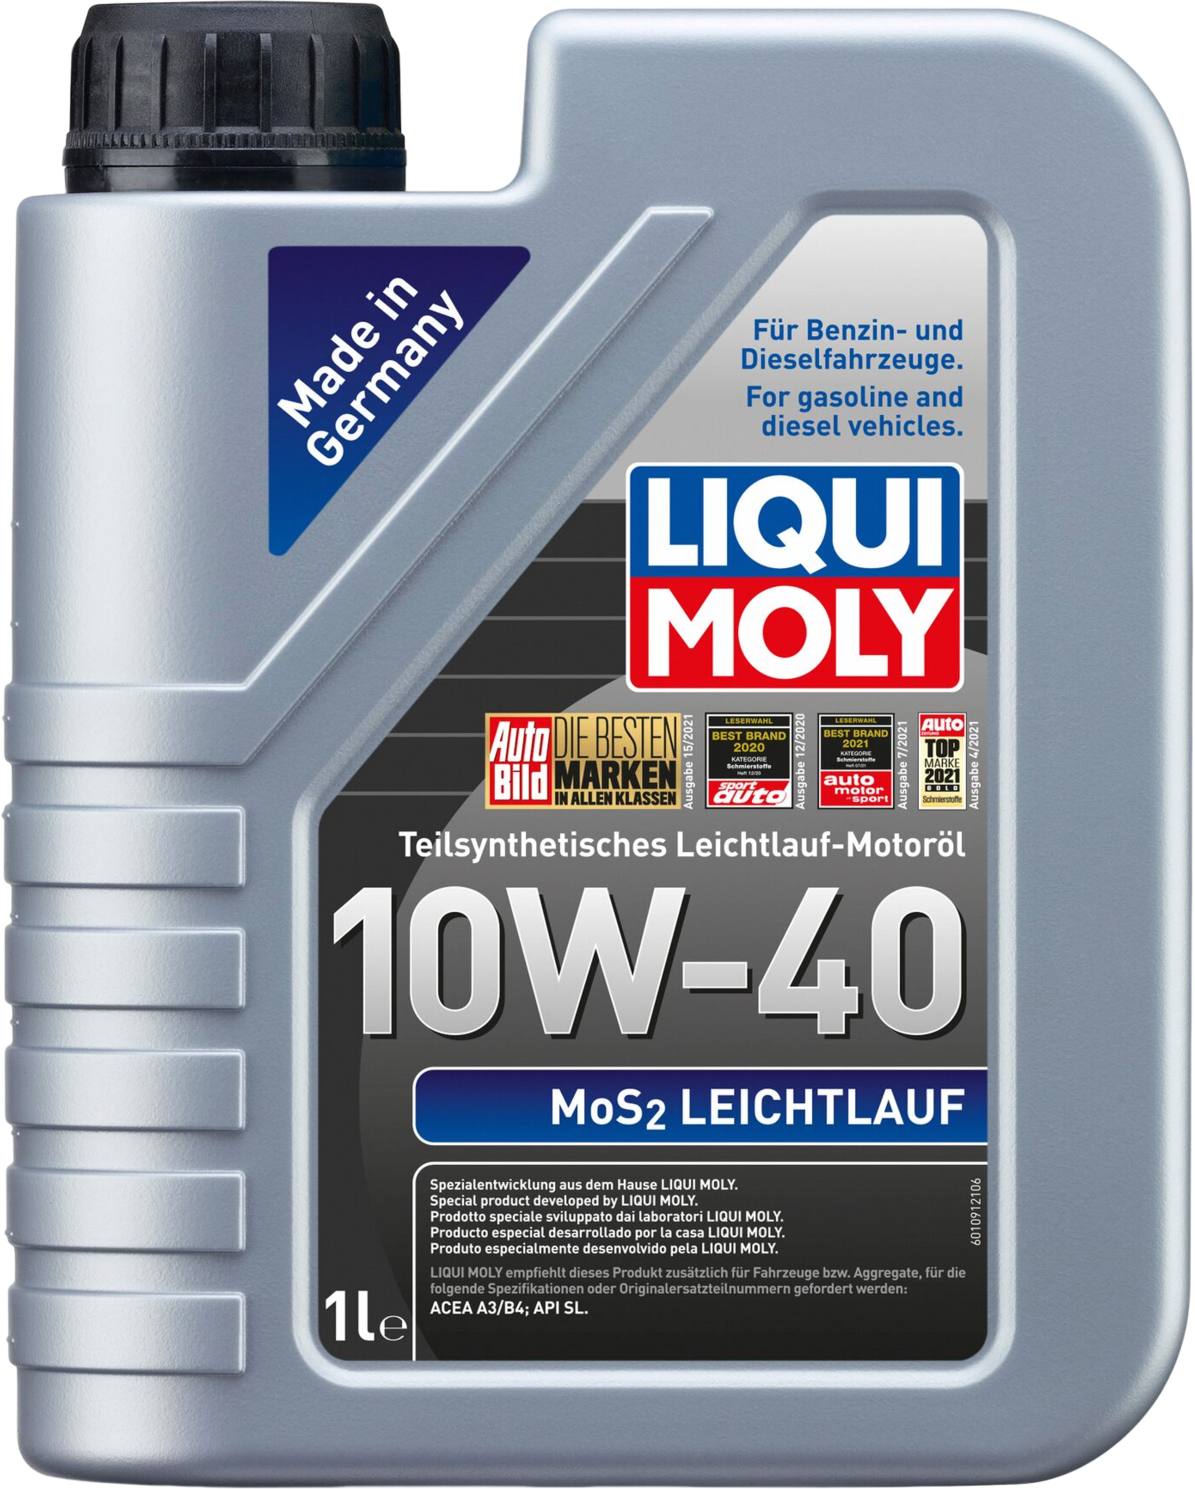 Liqui Moly MoS2 Leichtlauf 10W-40, 1 lt